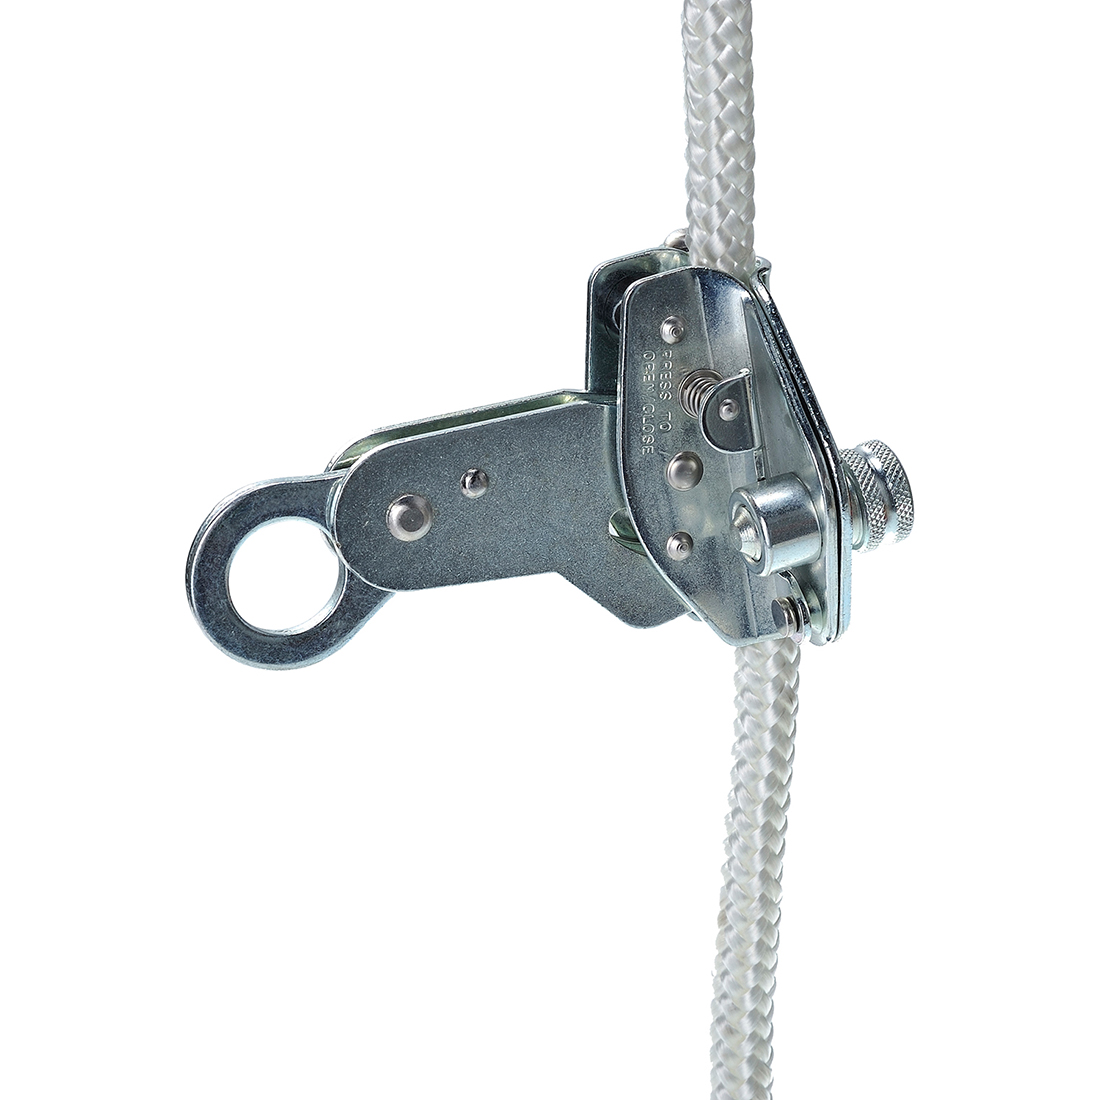 Detachable Rope Grab - 12mm